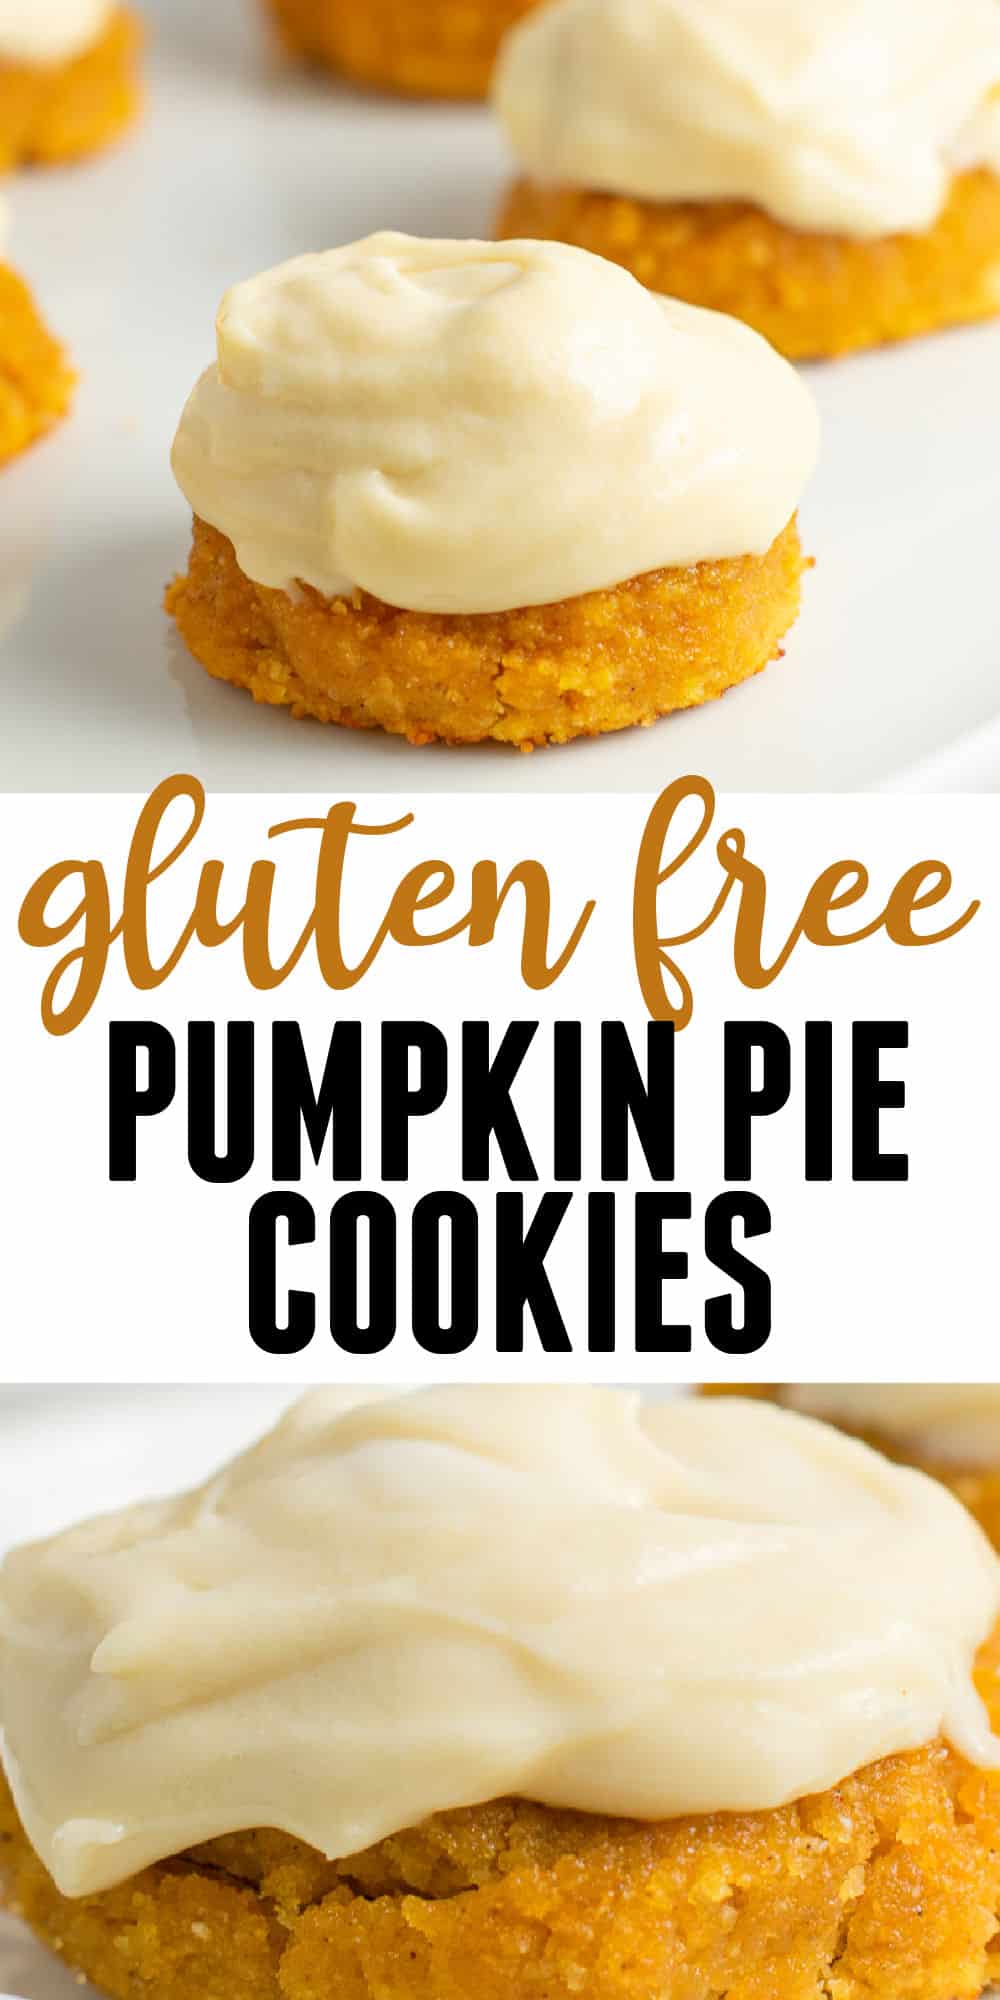 Gluten Free Pumpkin Cookies - Build Your Bite